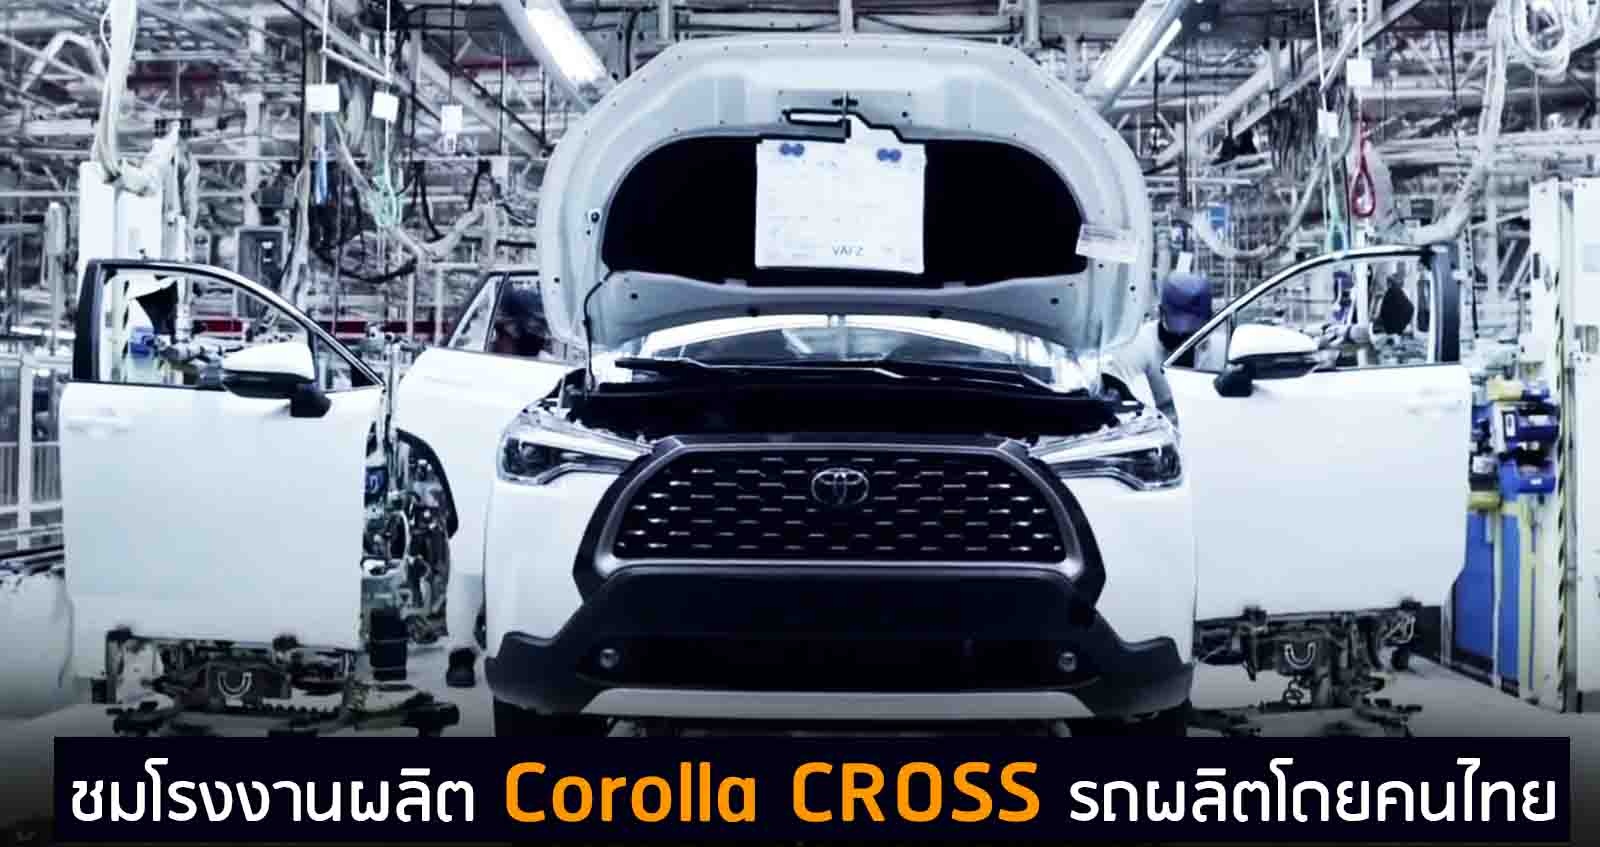 (VDO) ชมโรงงานผลิต Corolla CROSS รถผลิตในไทย ส่งขายต่างประเทศ